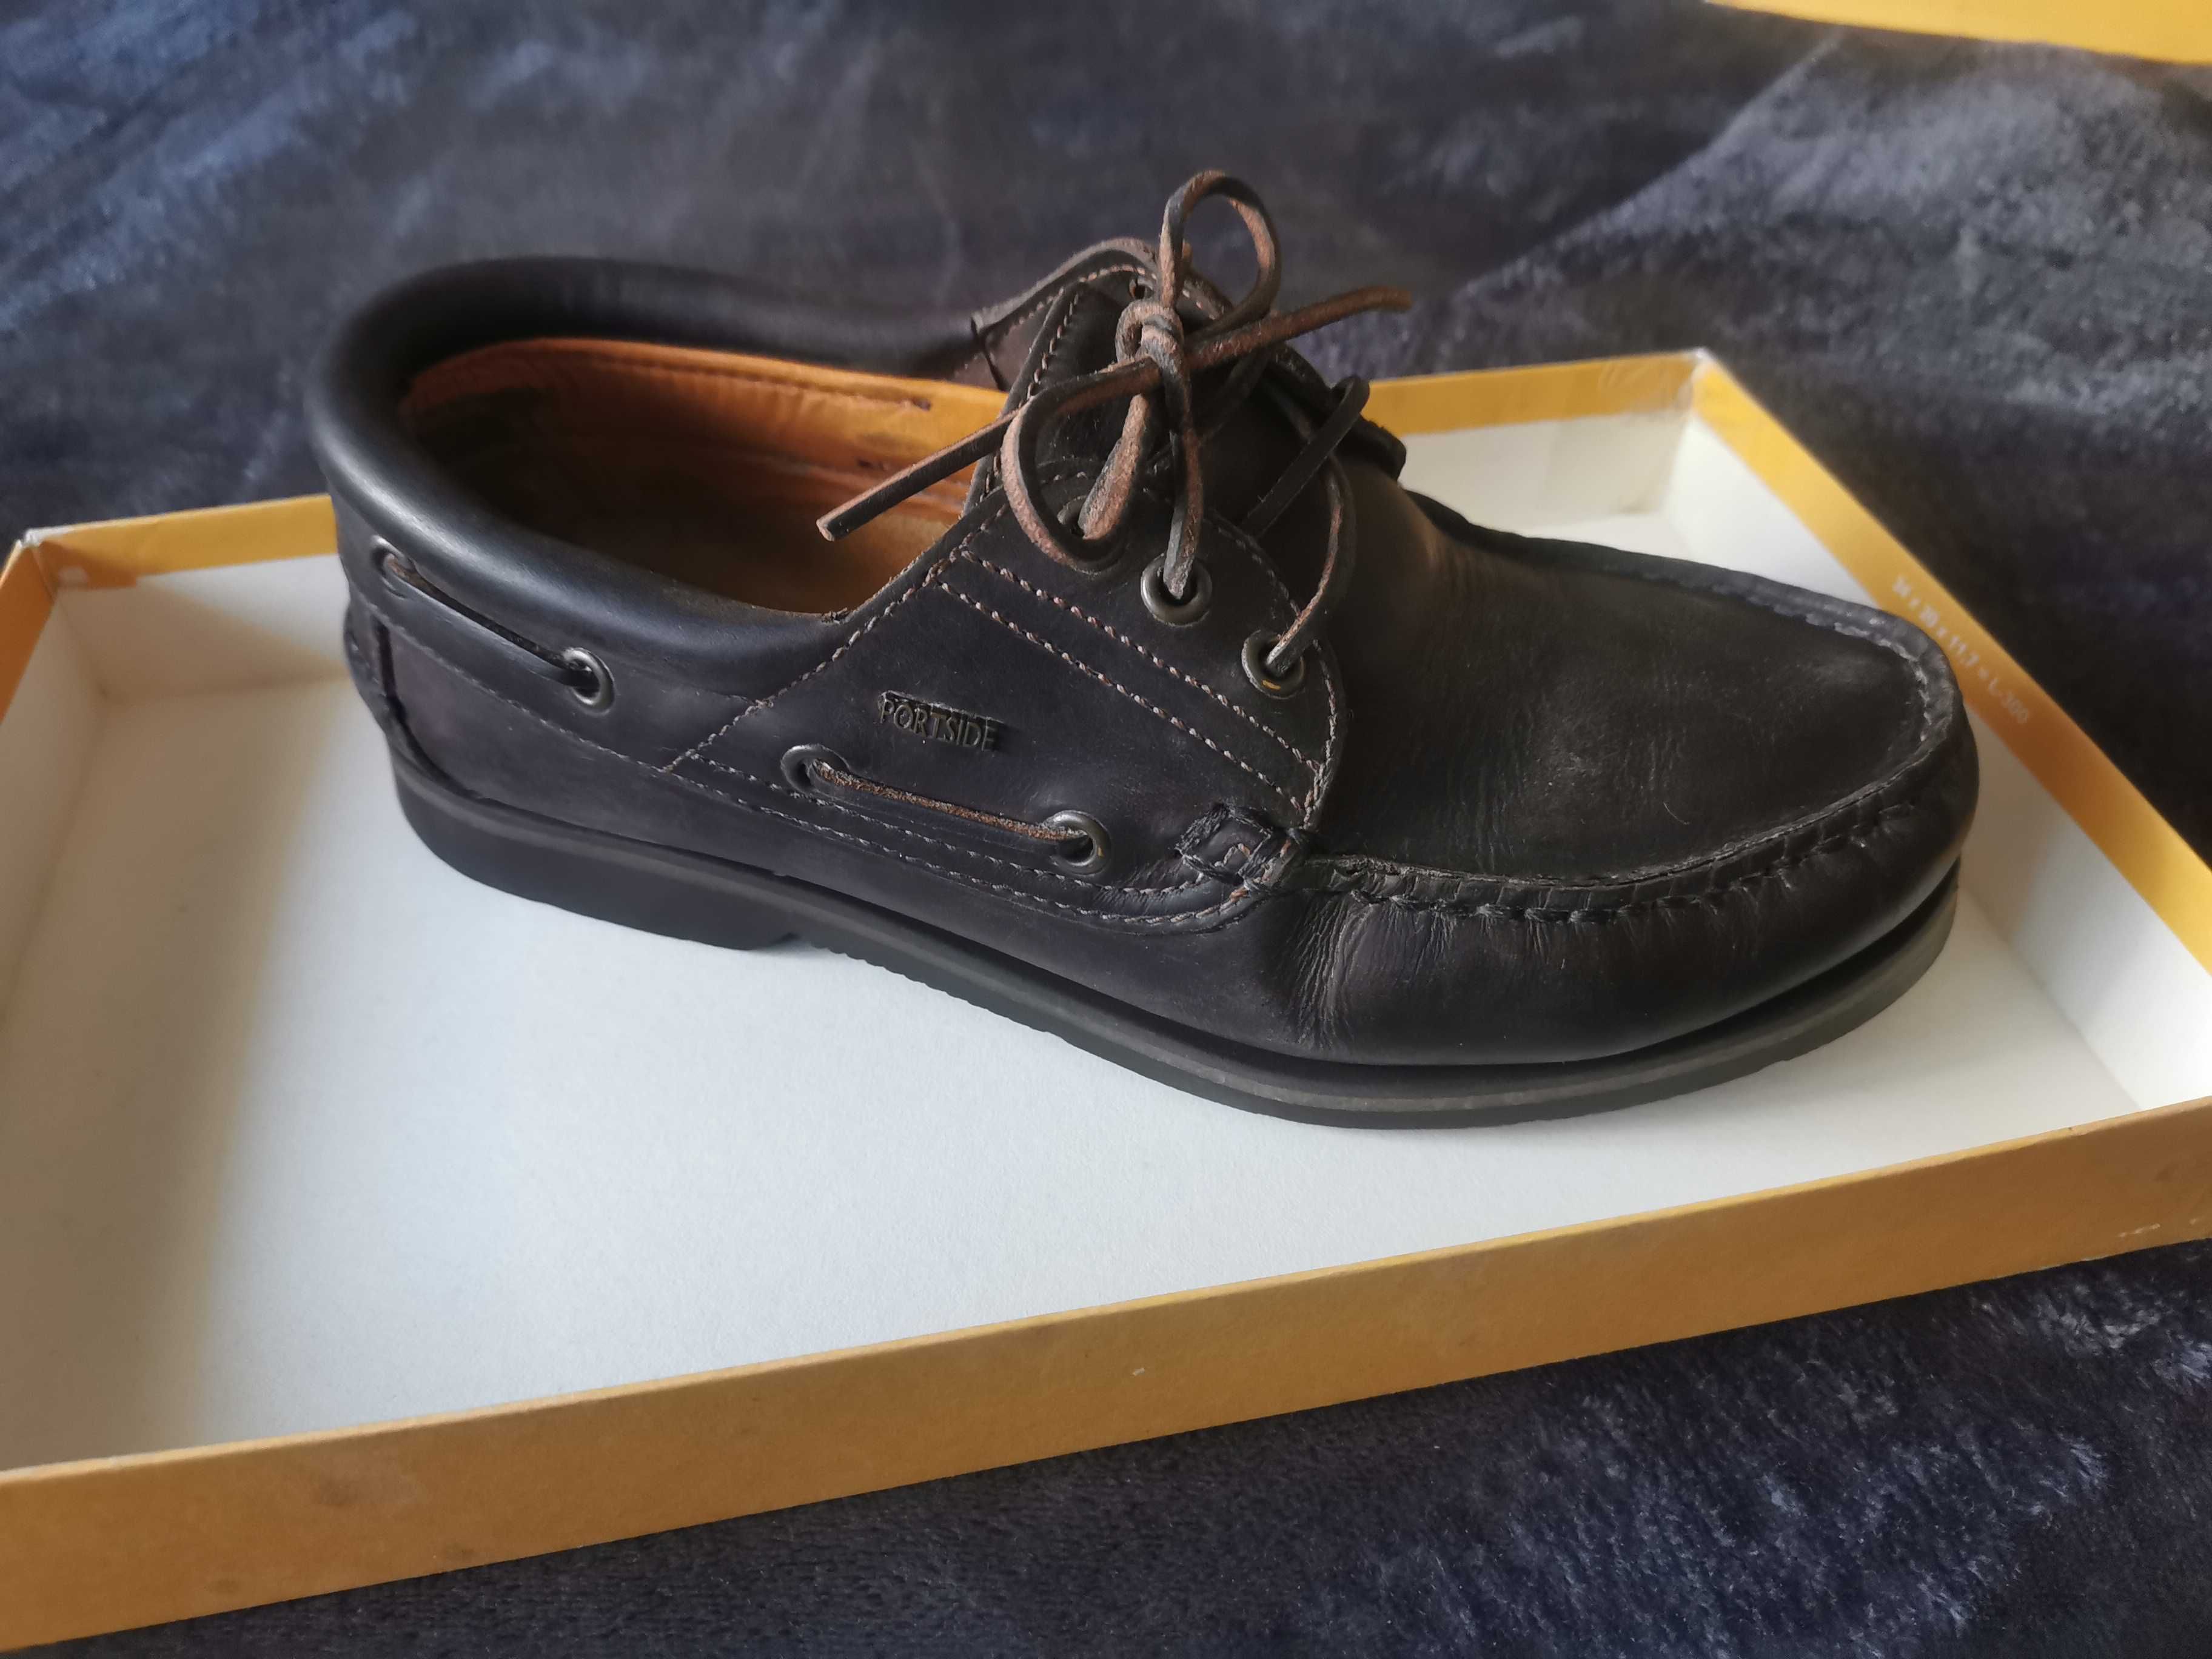 Sapato Vela - PORTSIDE Original